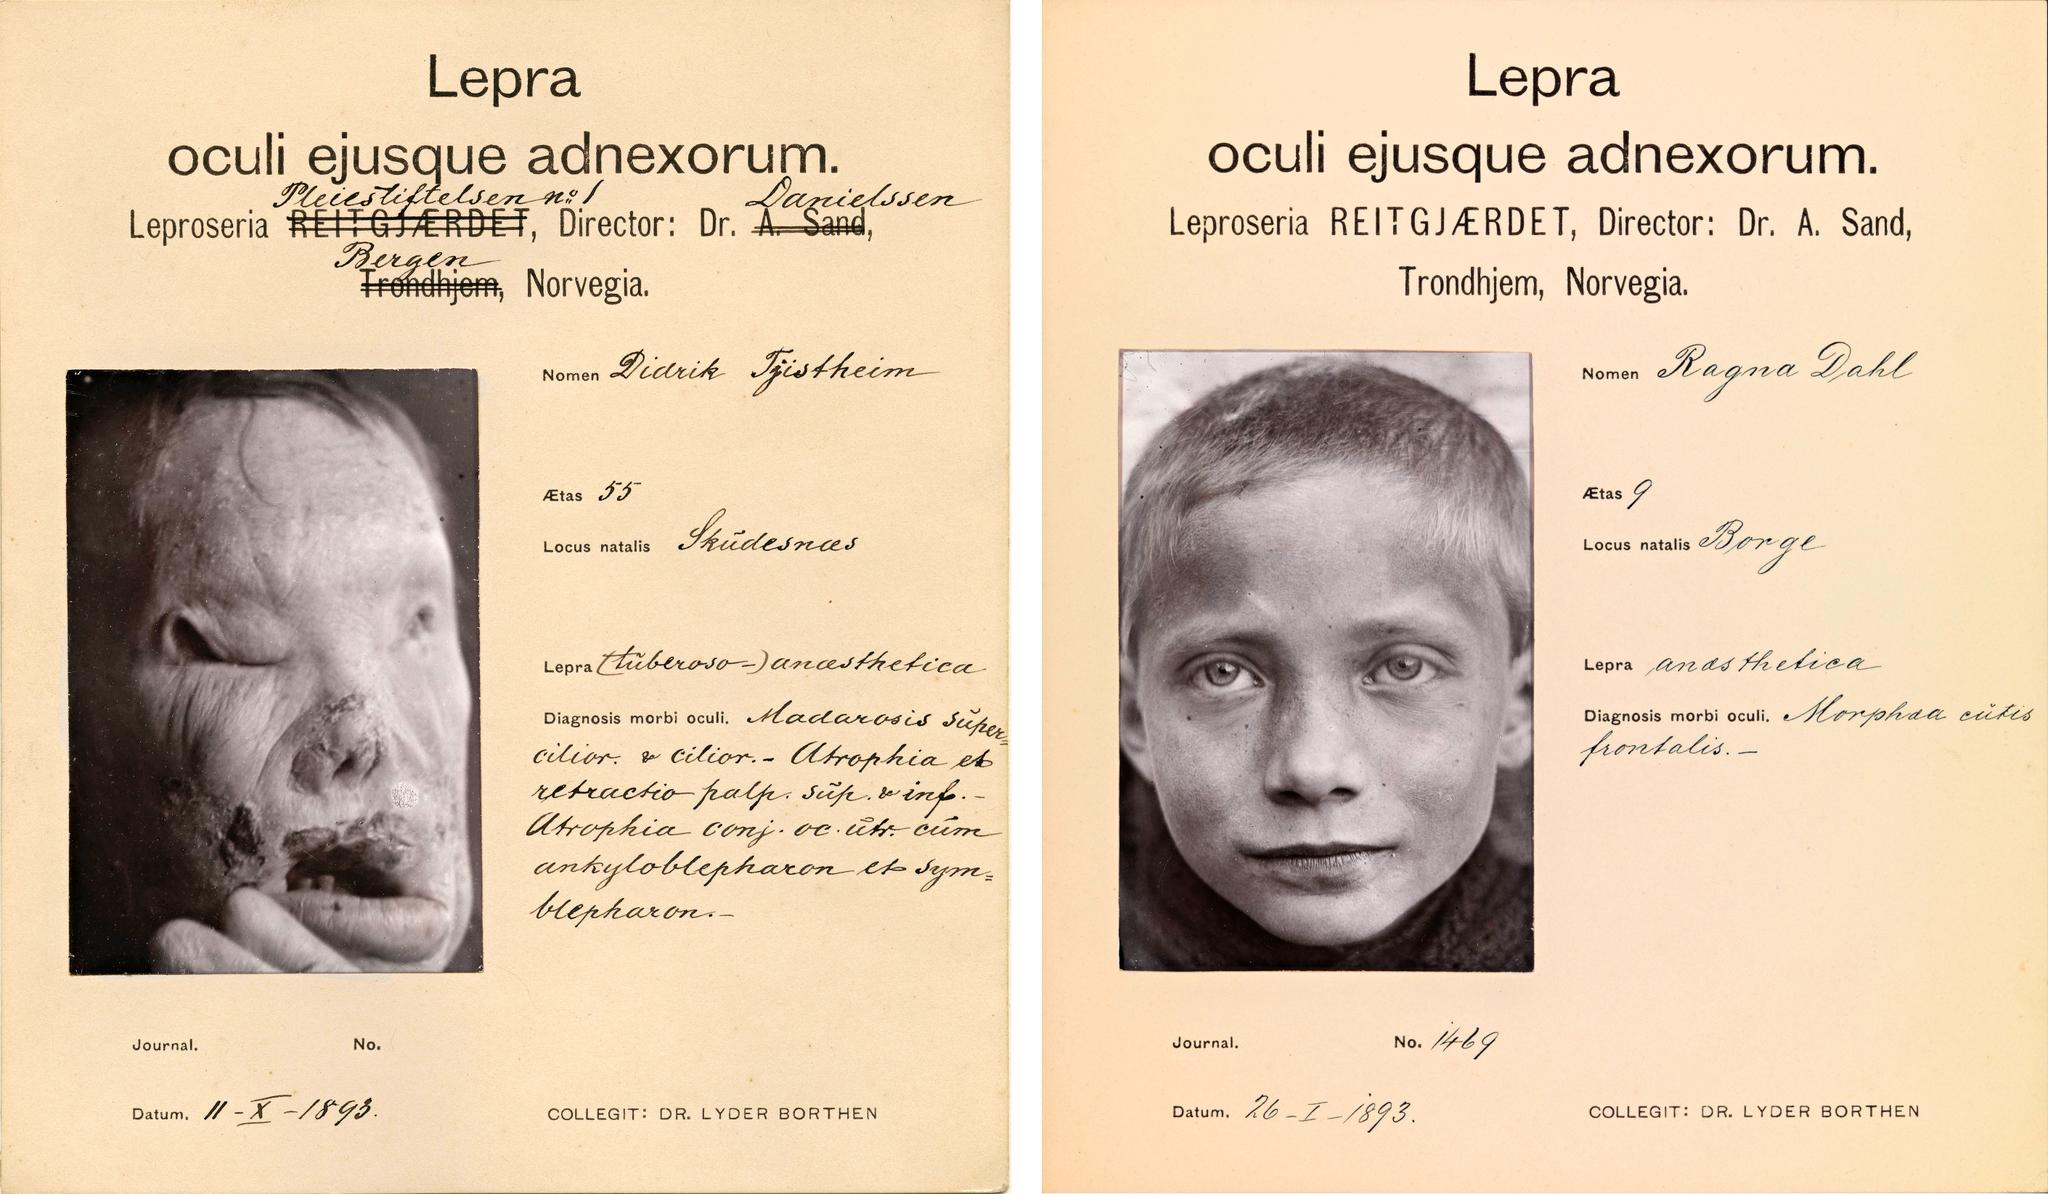 Samme sted. Spedalske barn levde ofte sammen med eldre mennesker på institusjonene - og så hvordan de kanskje kom til å bli. Den ni år gamle Ragna (til høyre) bodde i 1893 på Reitgjerdet sammen med den 55 år gamle Didrik.